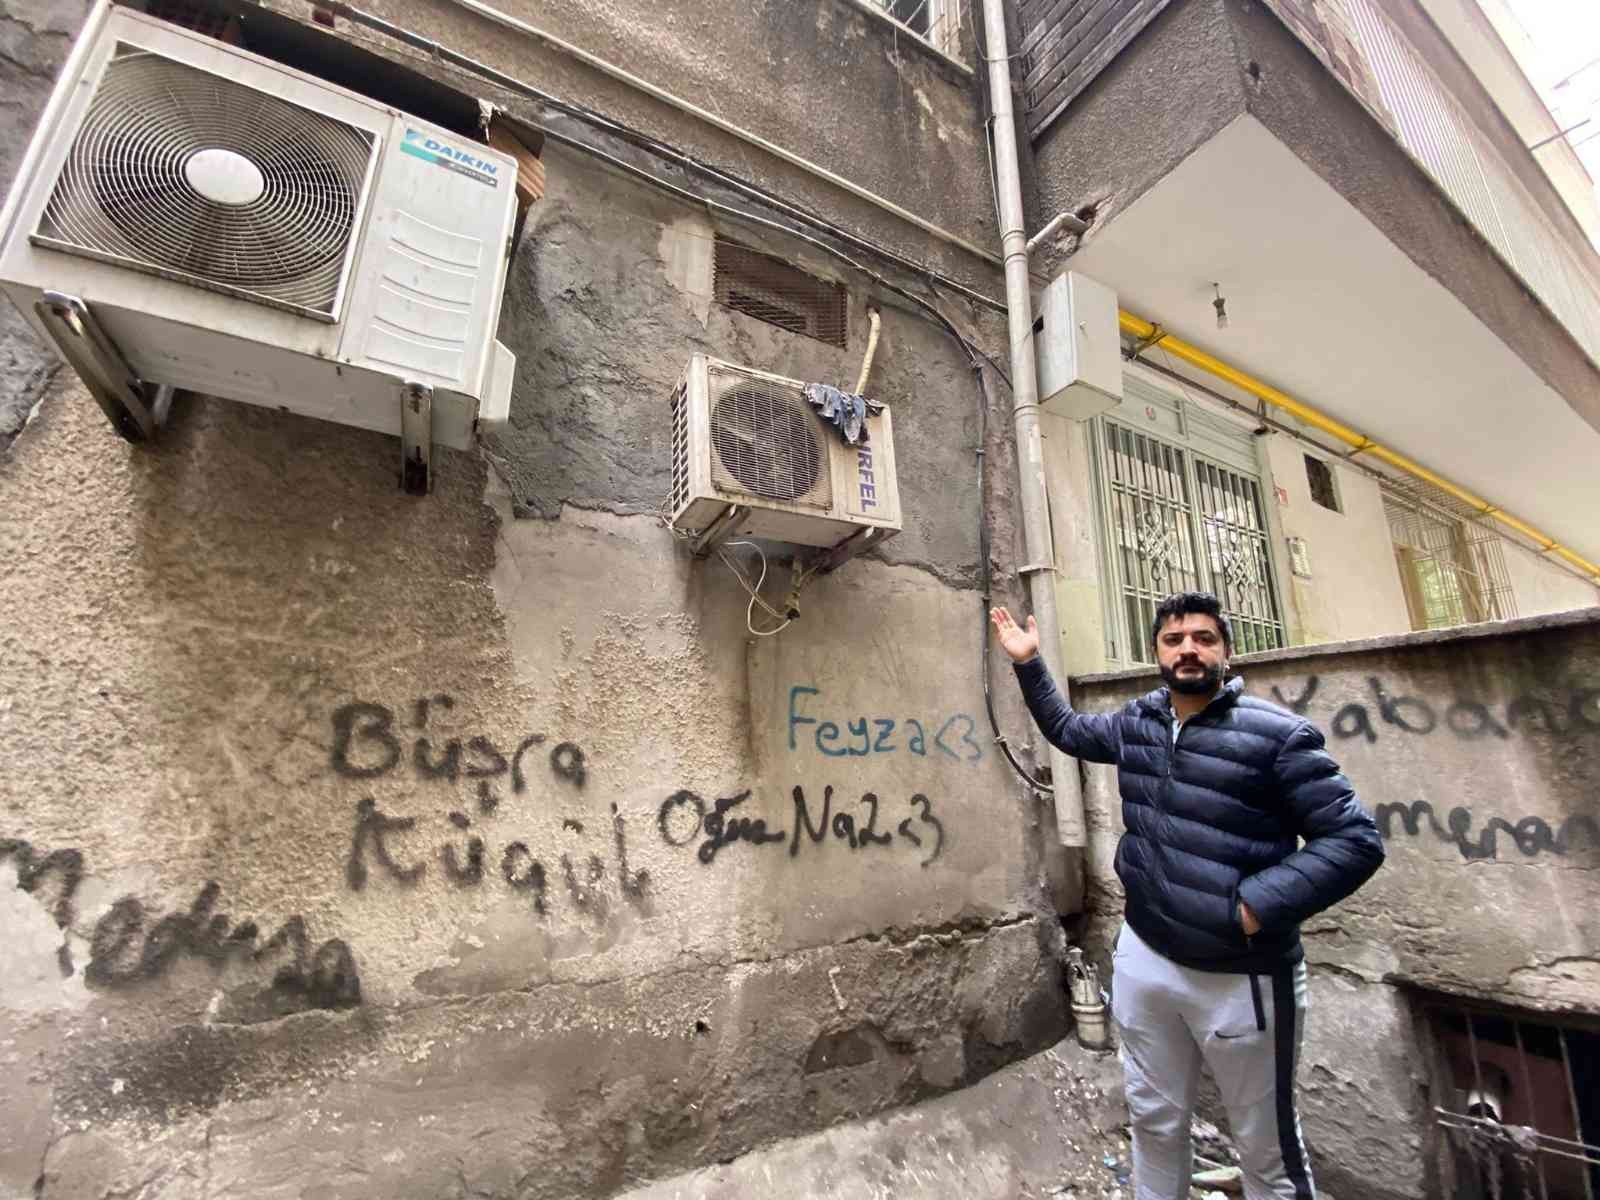 Önce çaldı, sonra şikayetçi oldu #diyarbakir